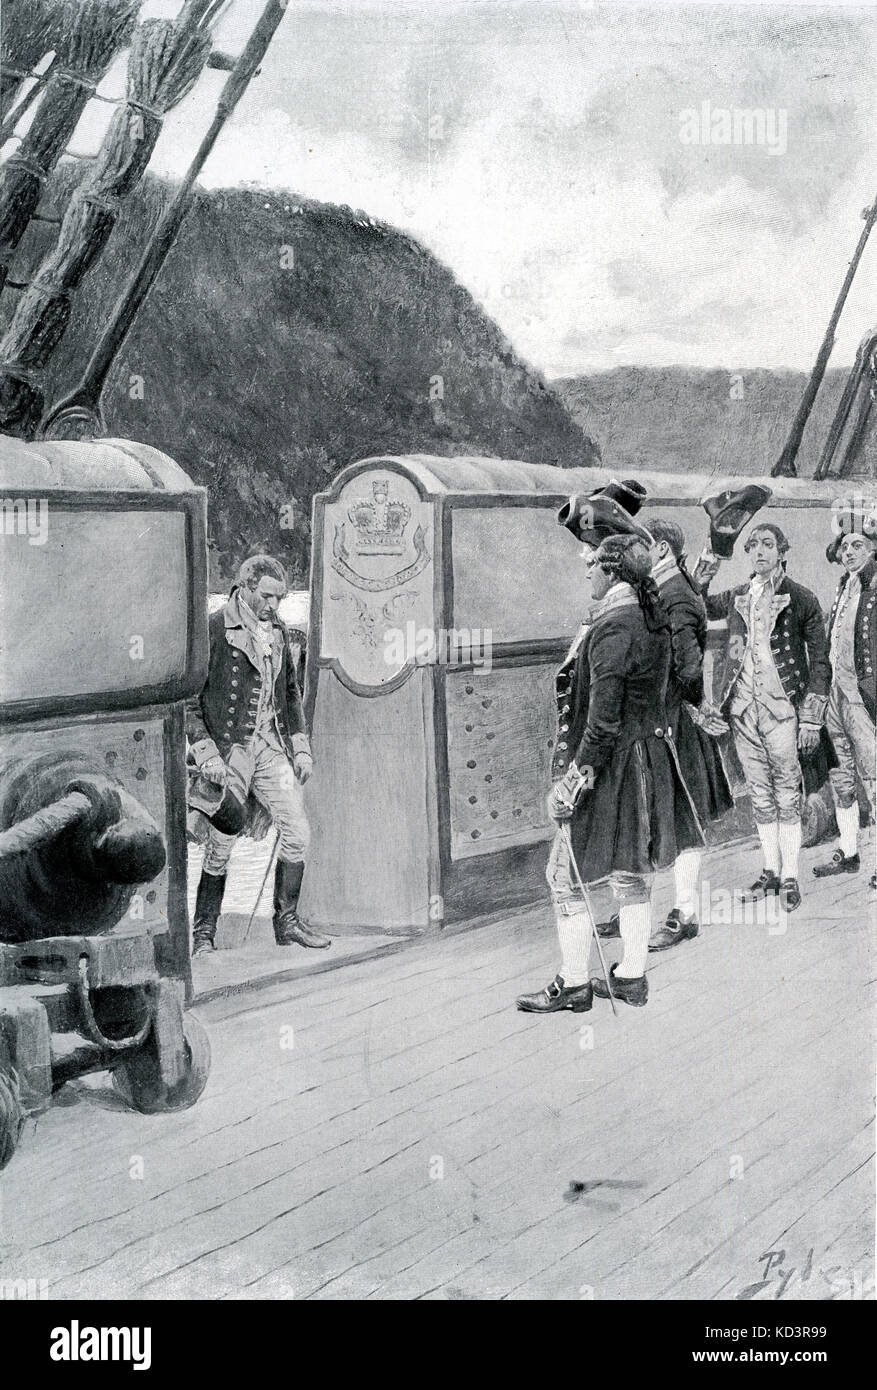 El escape del general revolucionario americano Benedict Arnold (1741 - 1801) al barco británico Vulture, 1780, después de desertar a los británicos. Revolución americana. Ilustración de Howard Pyle, 1896 Foto de stock